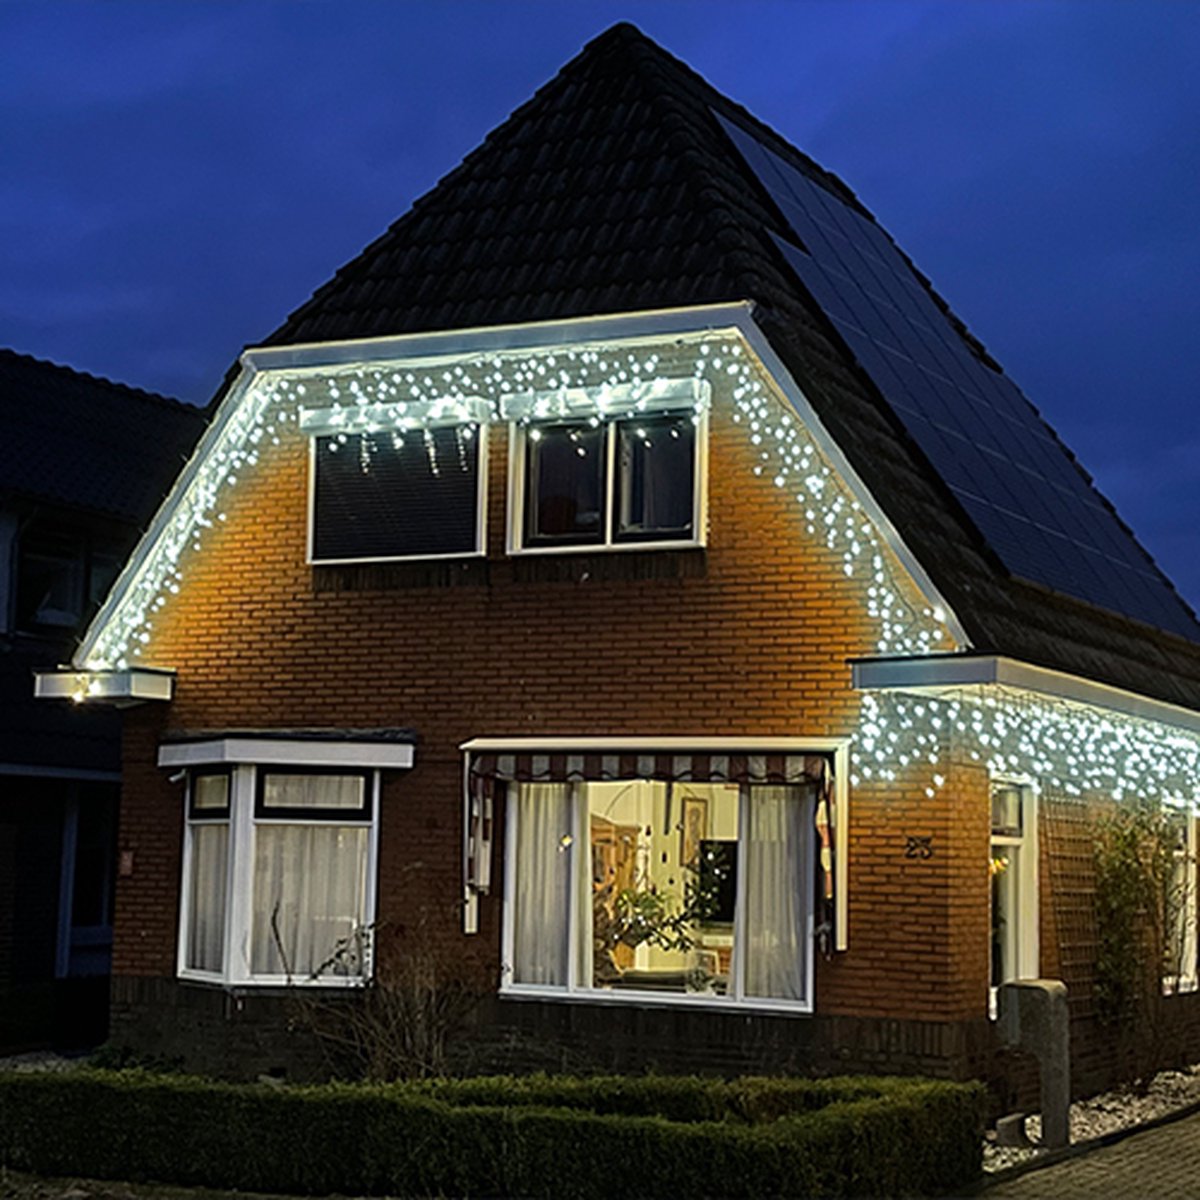 Kerstboomverlichting IJspegel kerstverlichting - 360 LED lampjes - 12 meter - wit licht - KerstXL